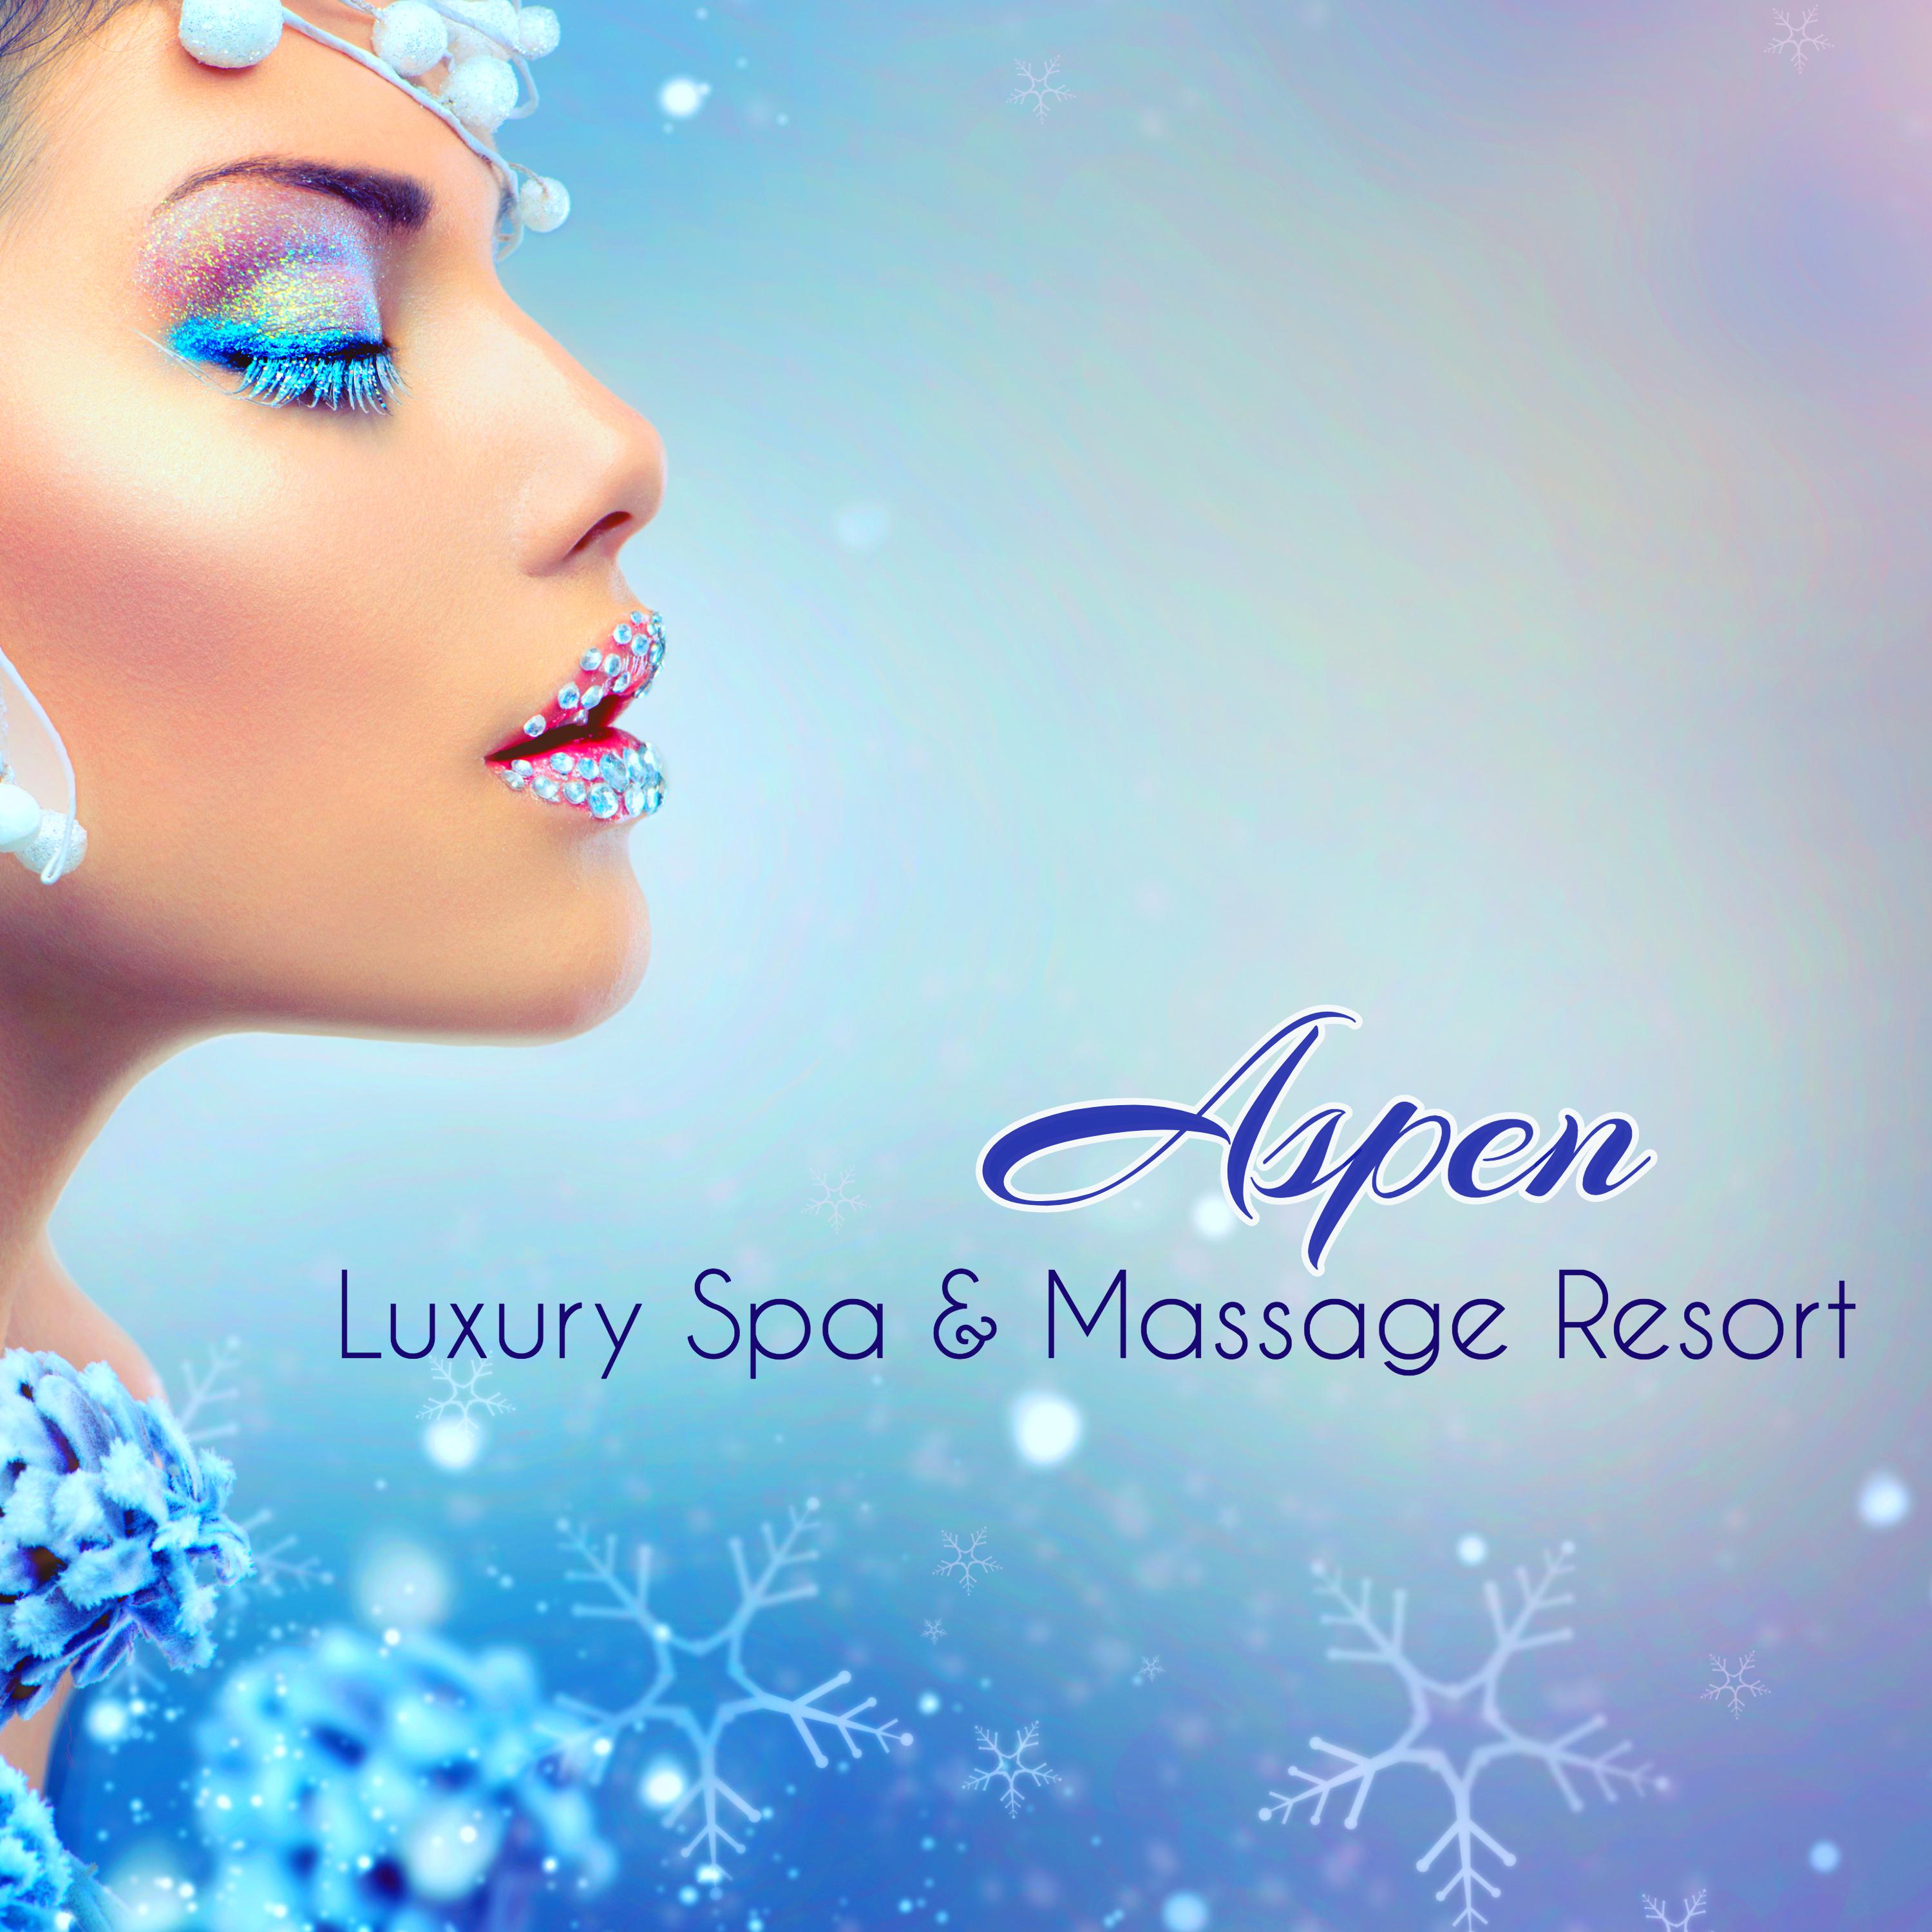 Aspen Luxury Spa & Massage Resort – Easy Listening Background Music for Wellness Center & Spa